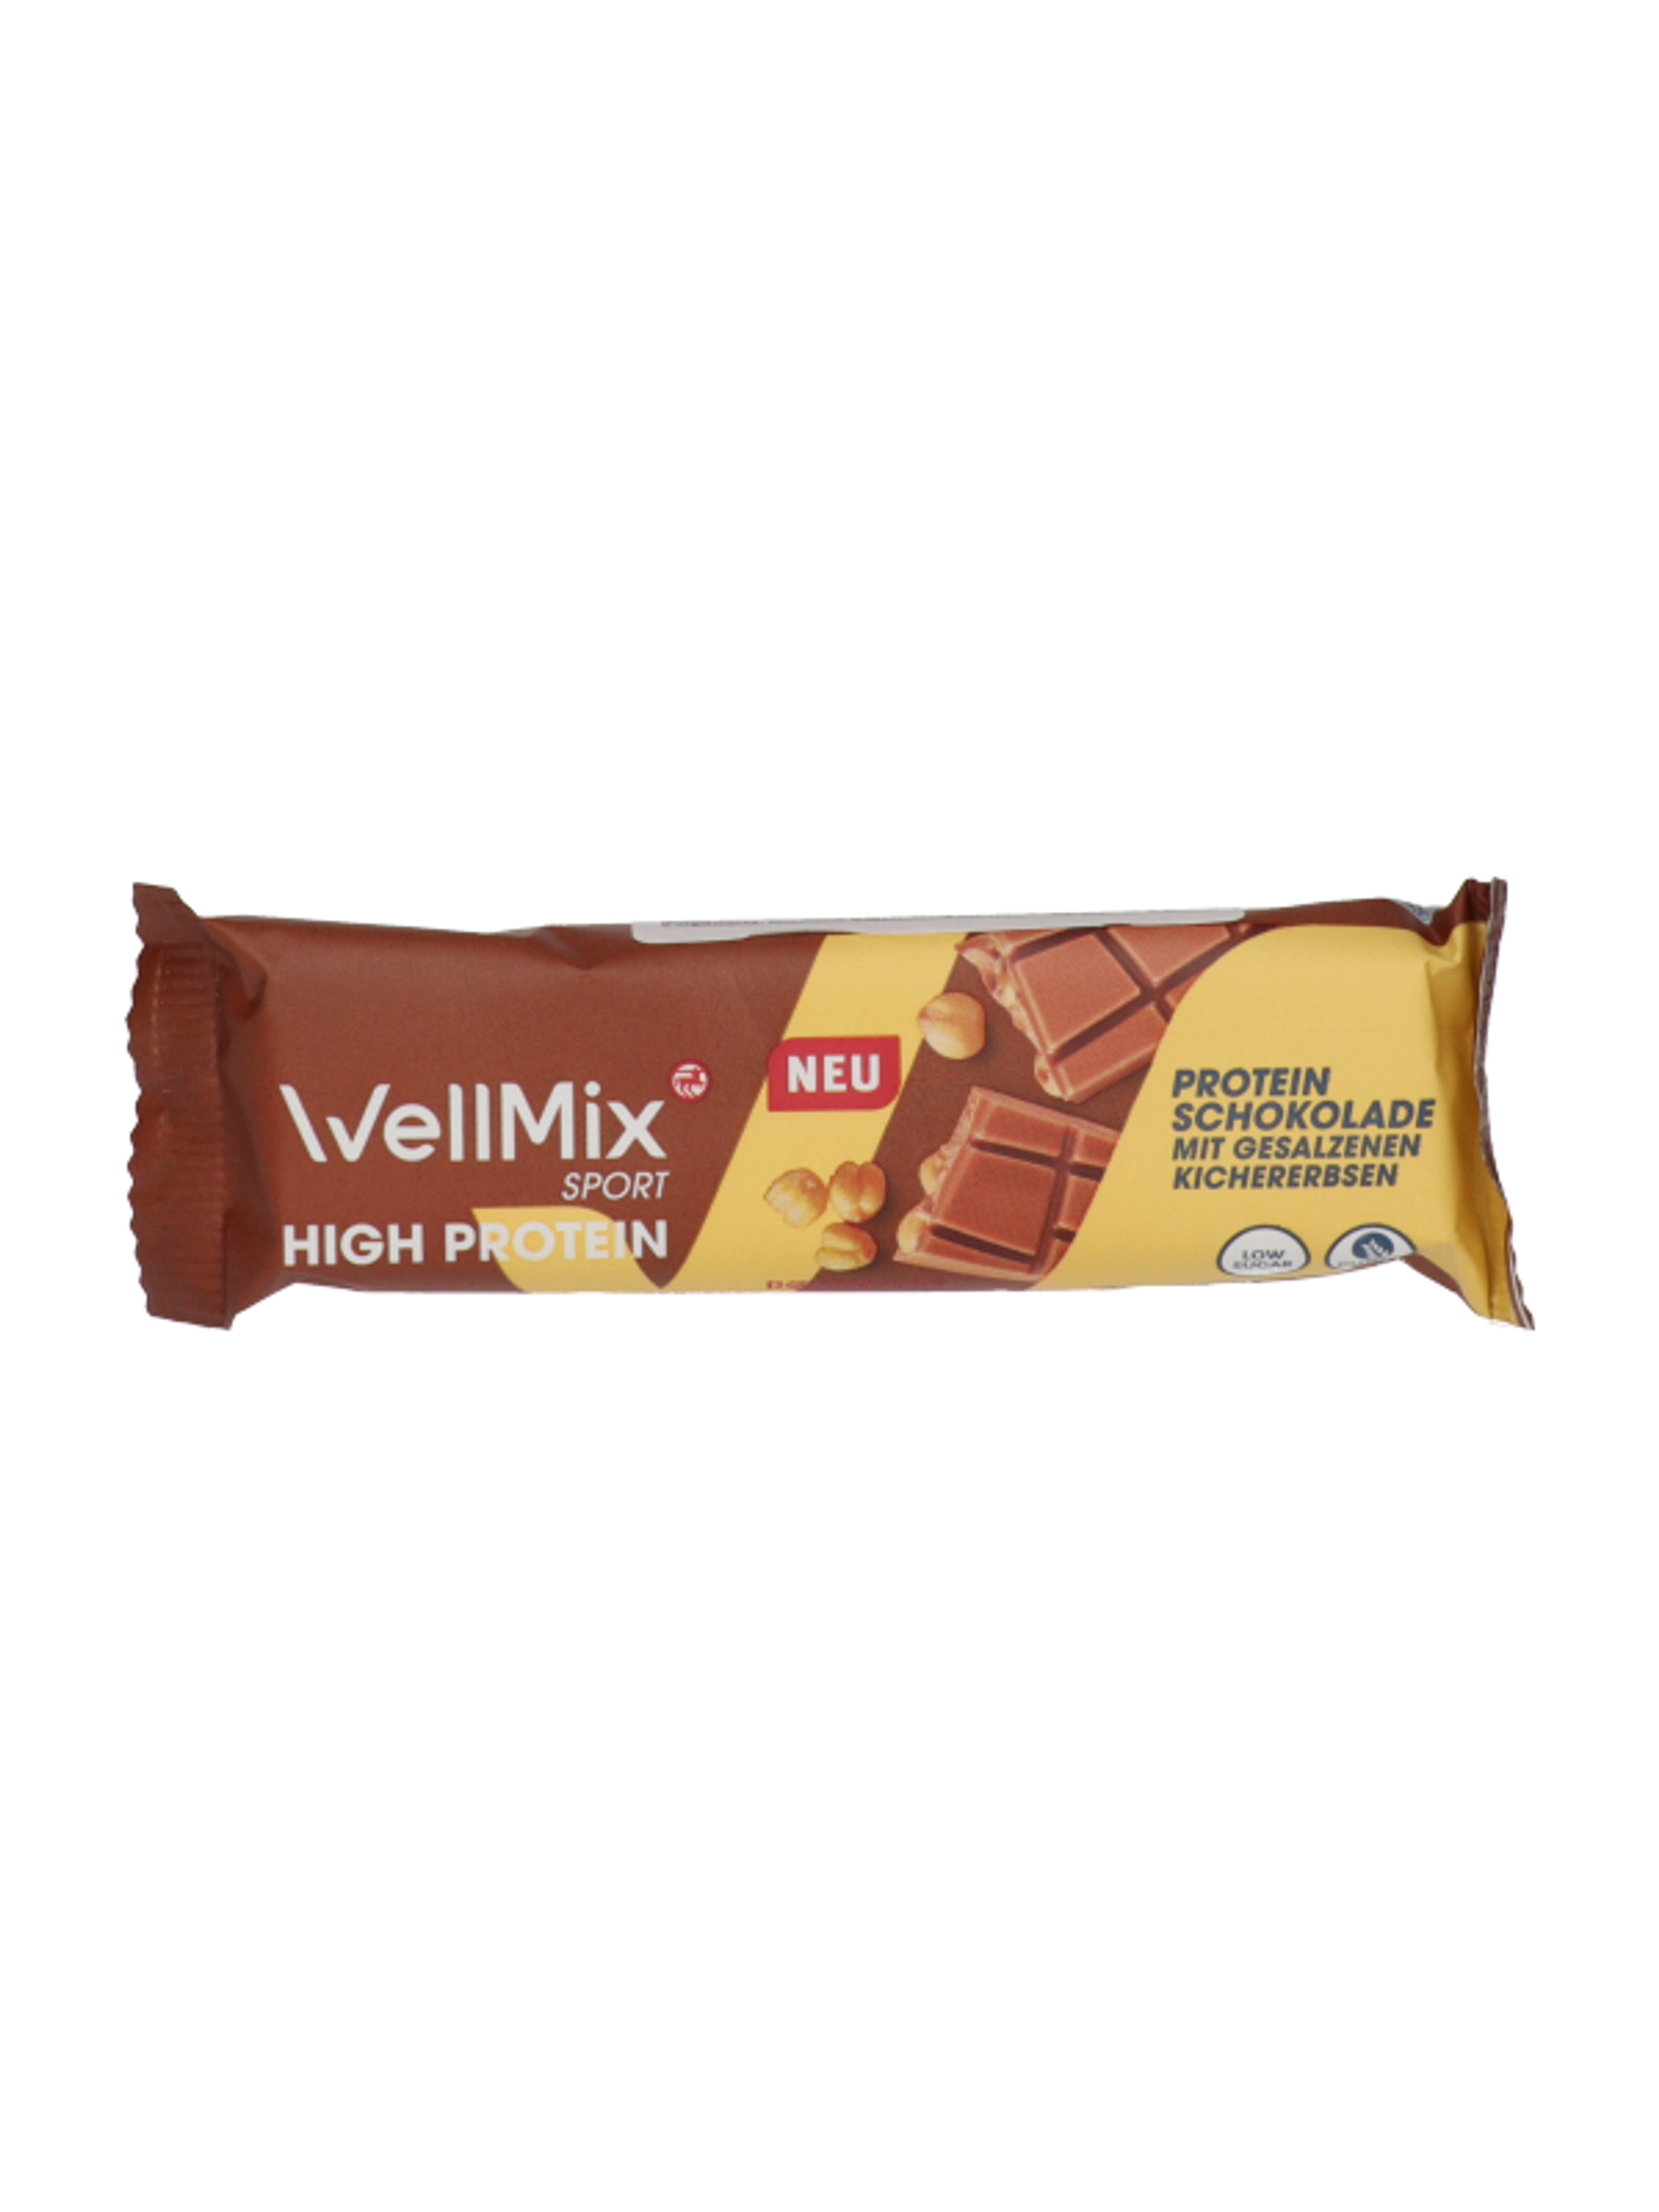 Well Mix csokis protein szelet - 40 g-1